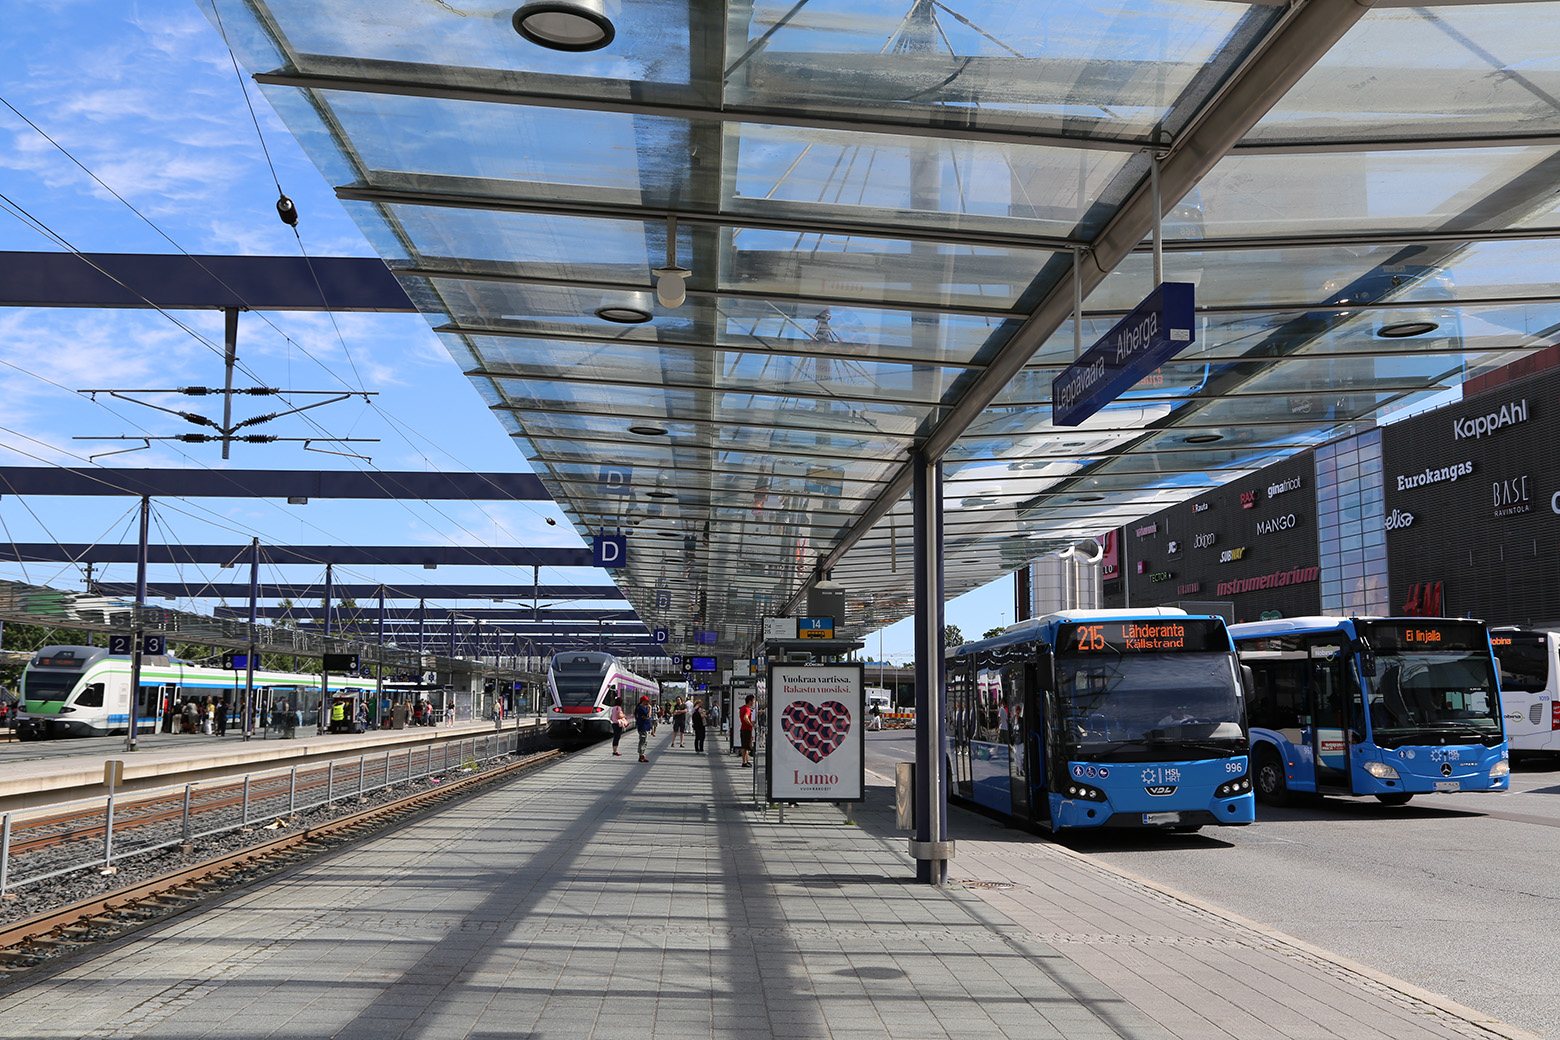 kuva Leppävaaran asemalta, jossa junia, busseja, katoksia ja Sello-kauppakeskus